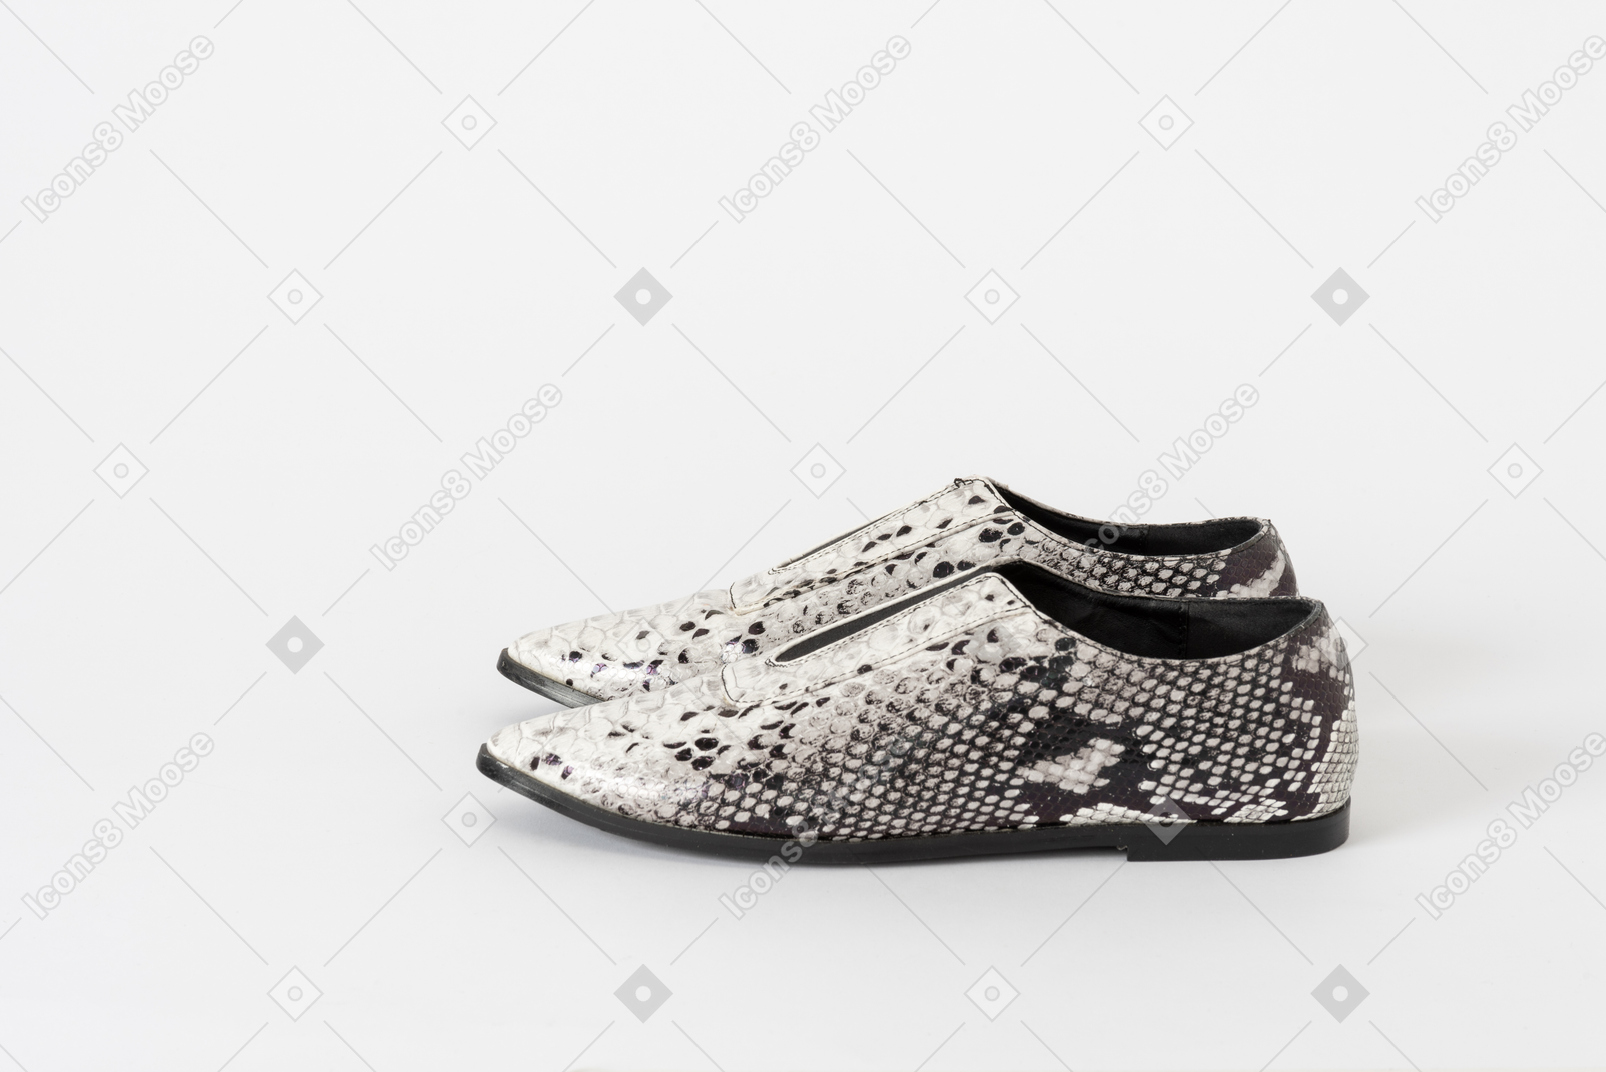 Una foto lateral de un par de zapatos planos de piel de serpiente en blanco y negro